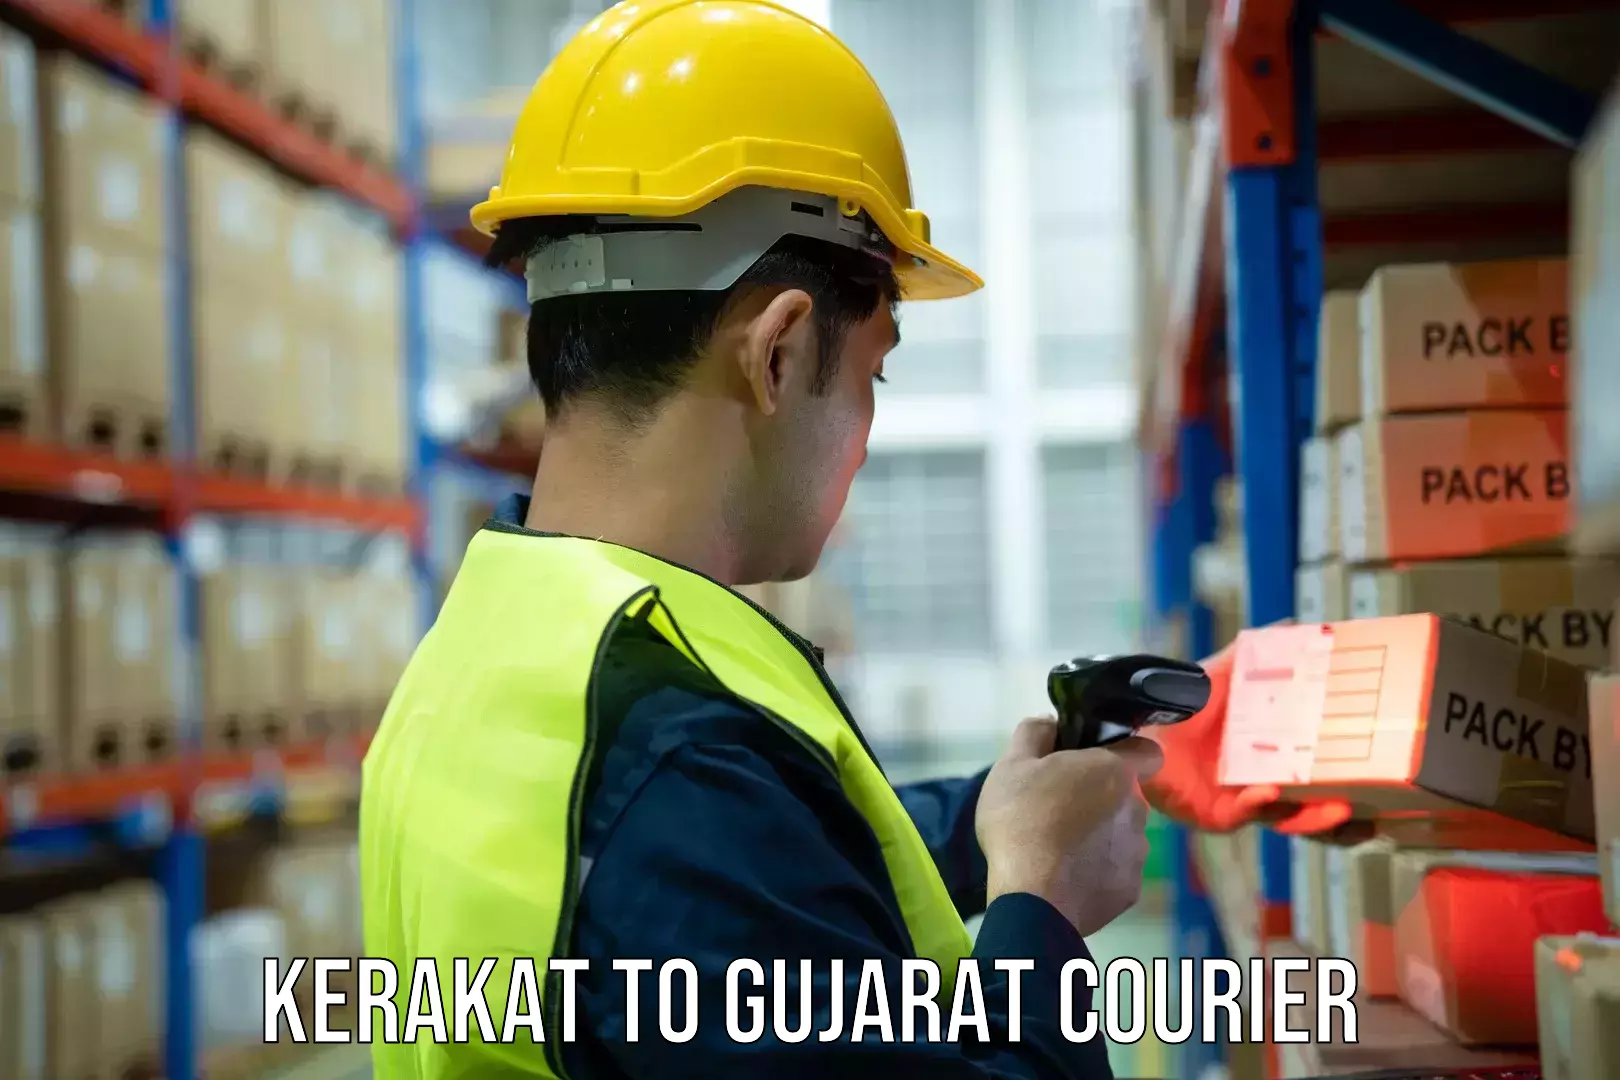 Efficient courier operations Kerakat to Kodinar